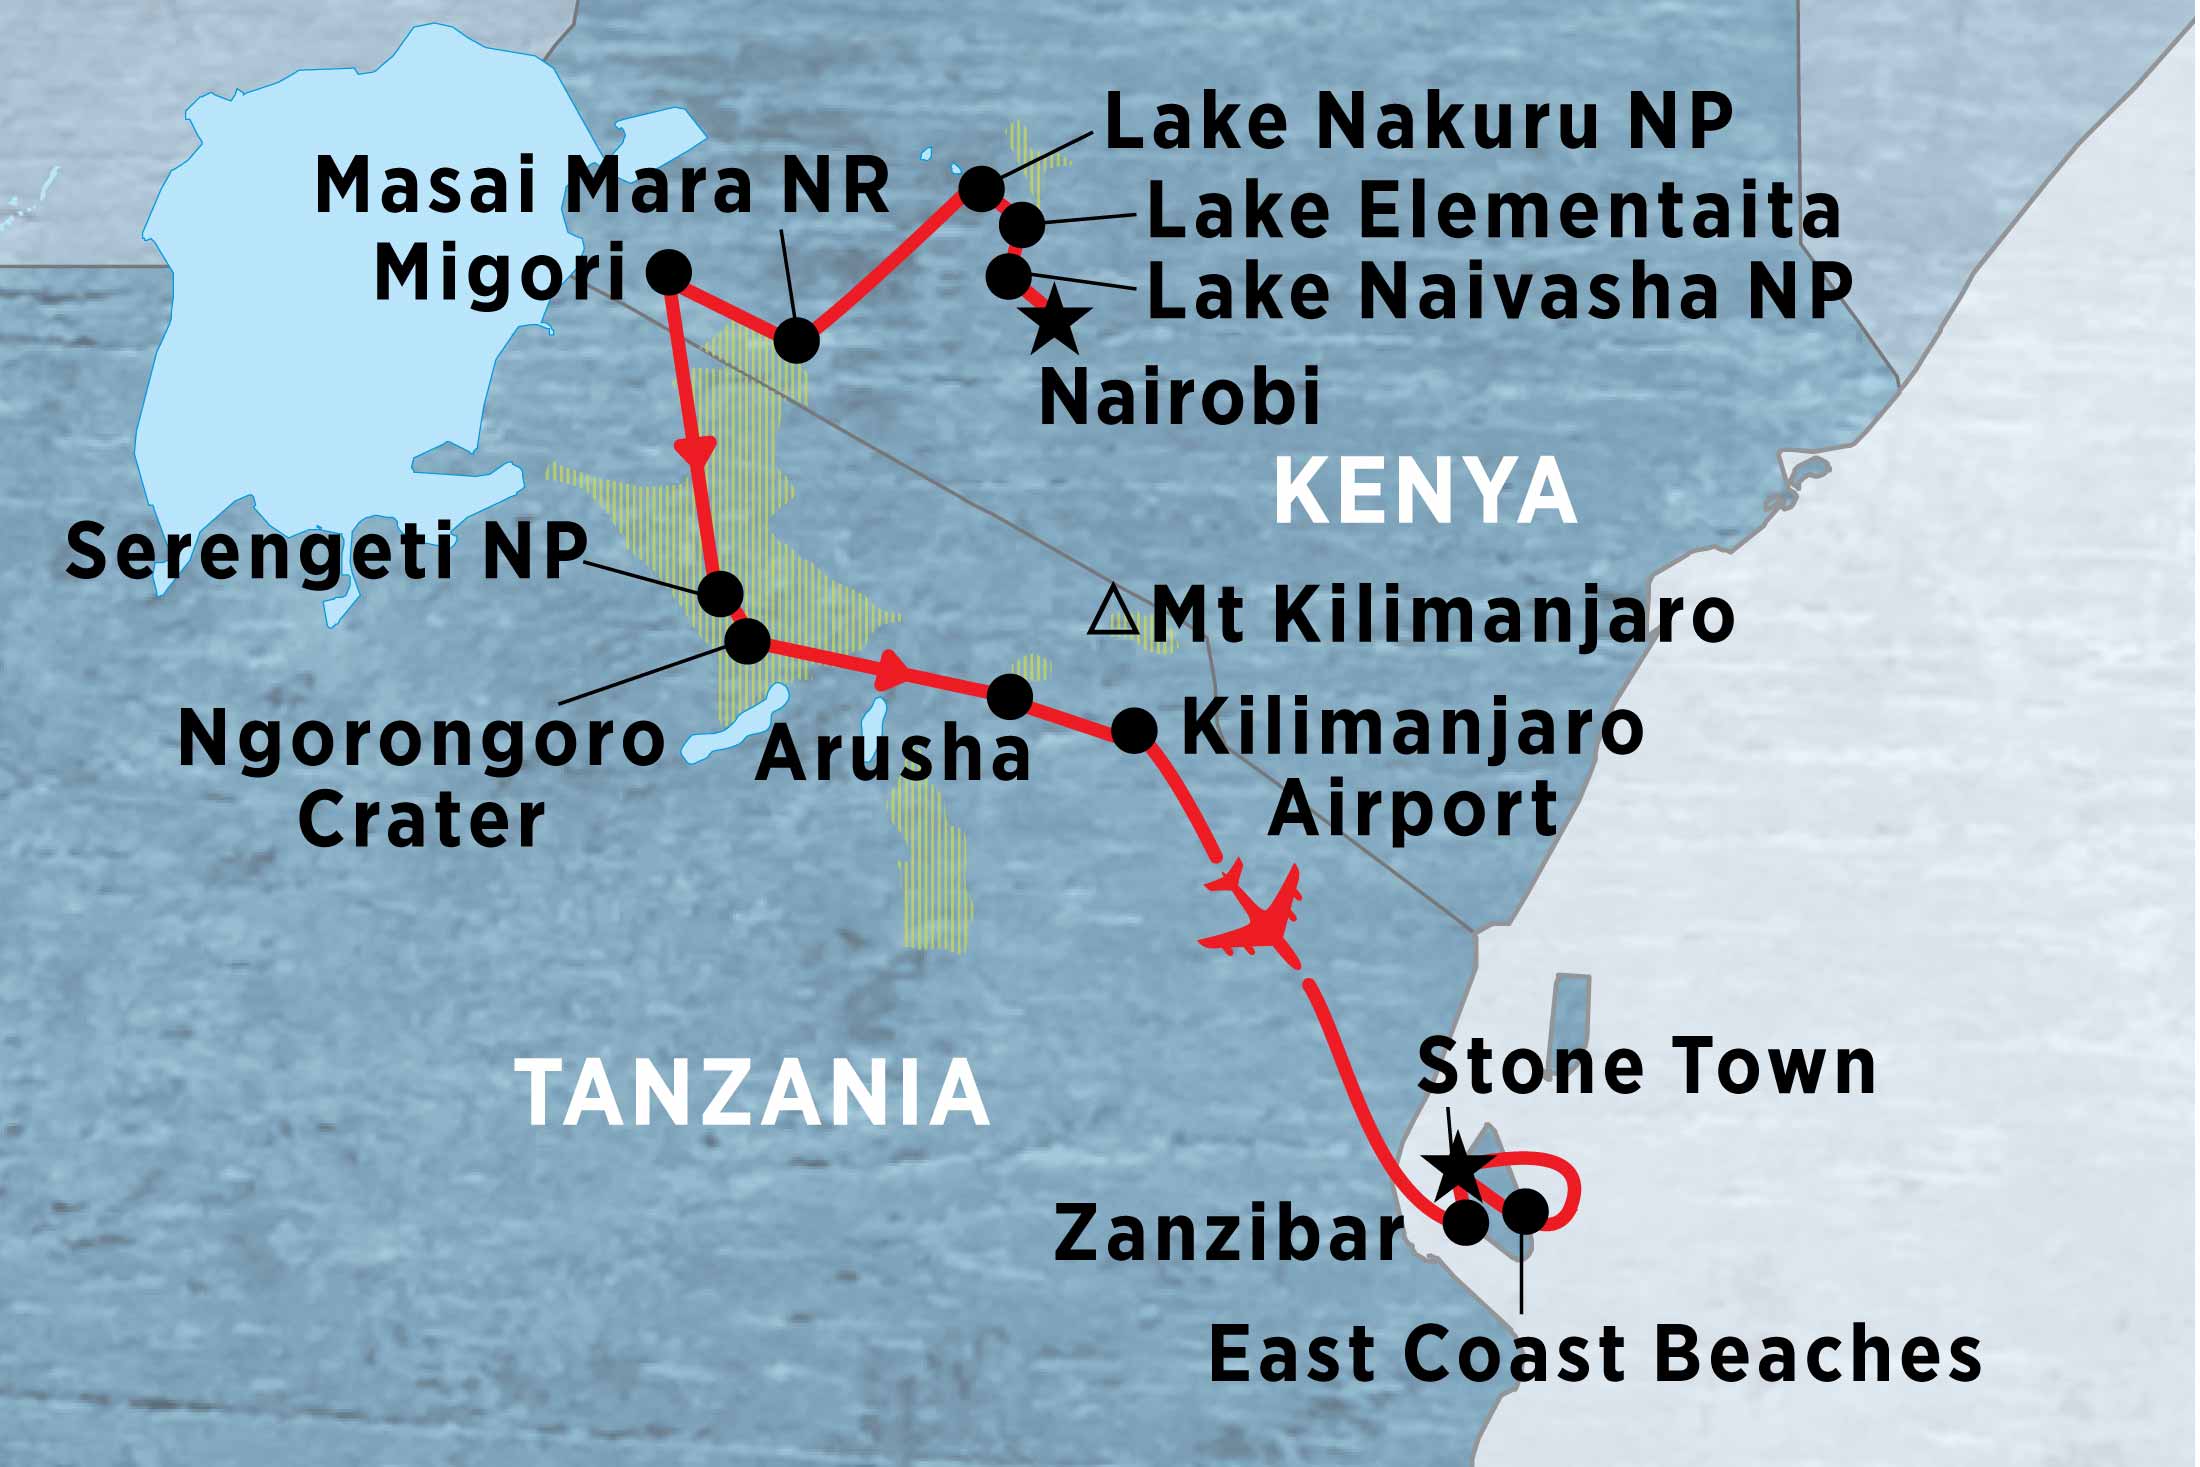 The Road to Zanzibar